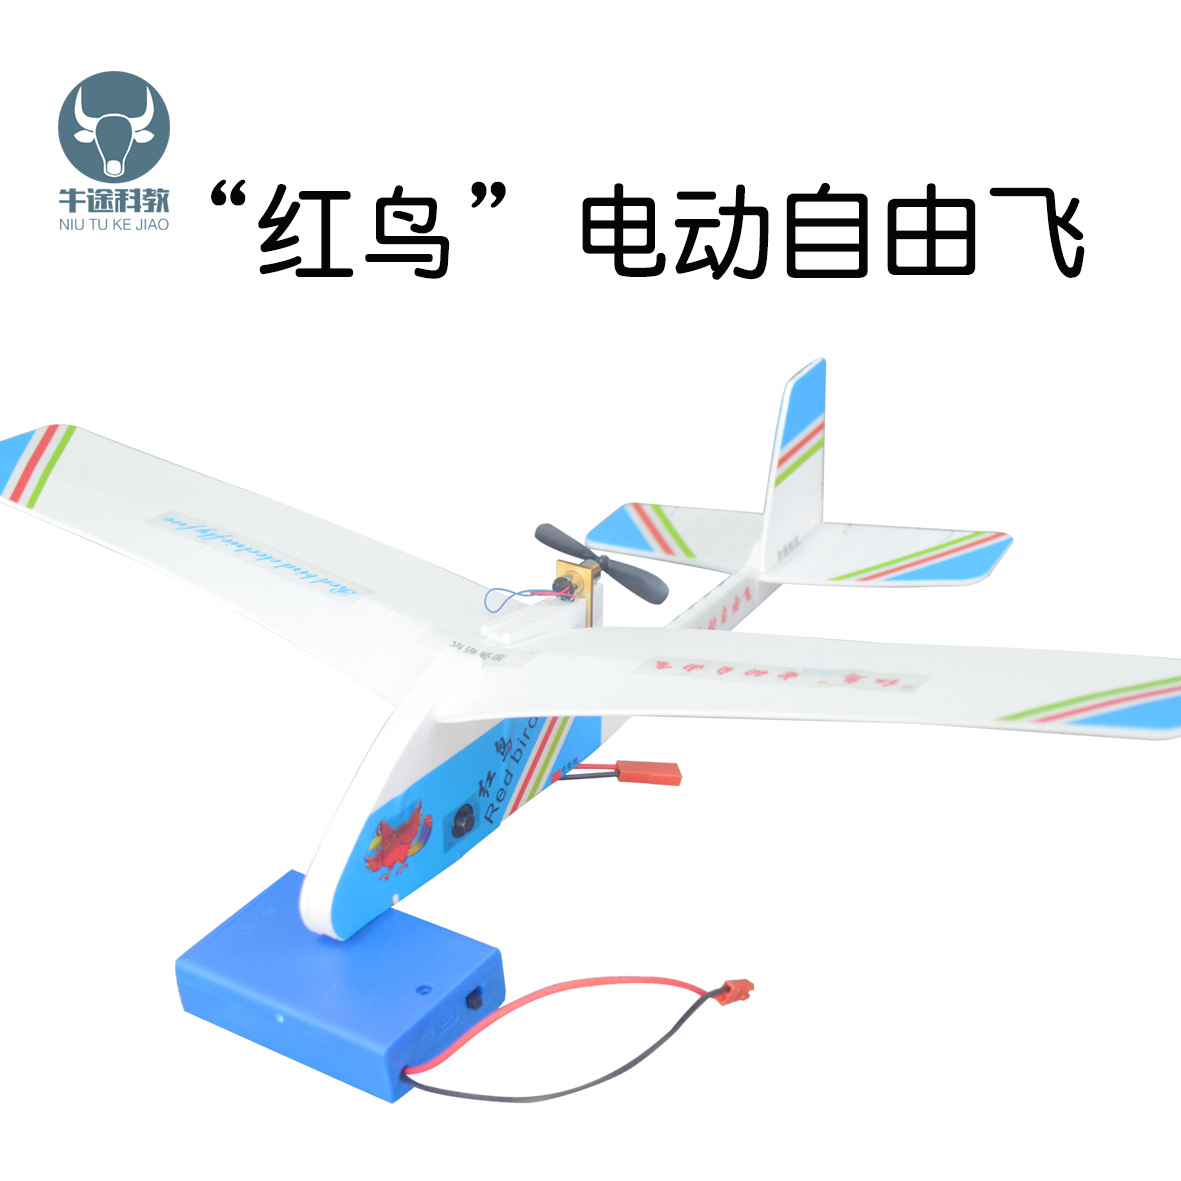 红鸟电动自由飞 电动滑翔飞机 DIY手工制作航模飞机 科普科技材料